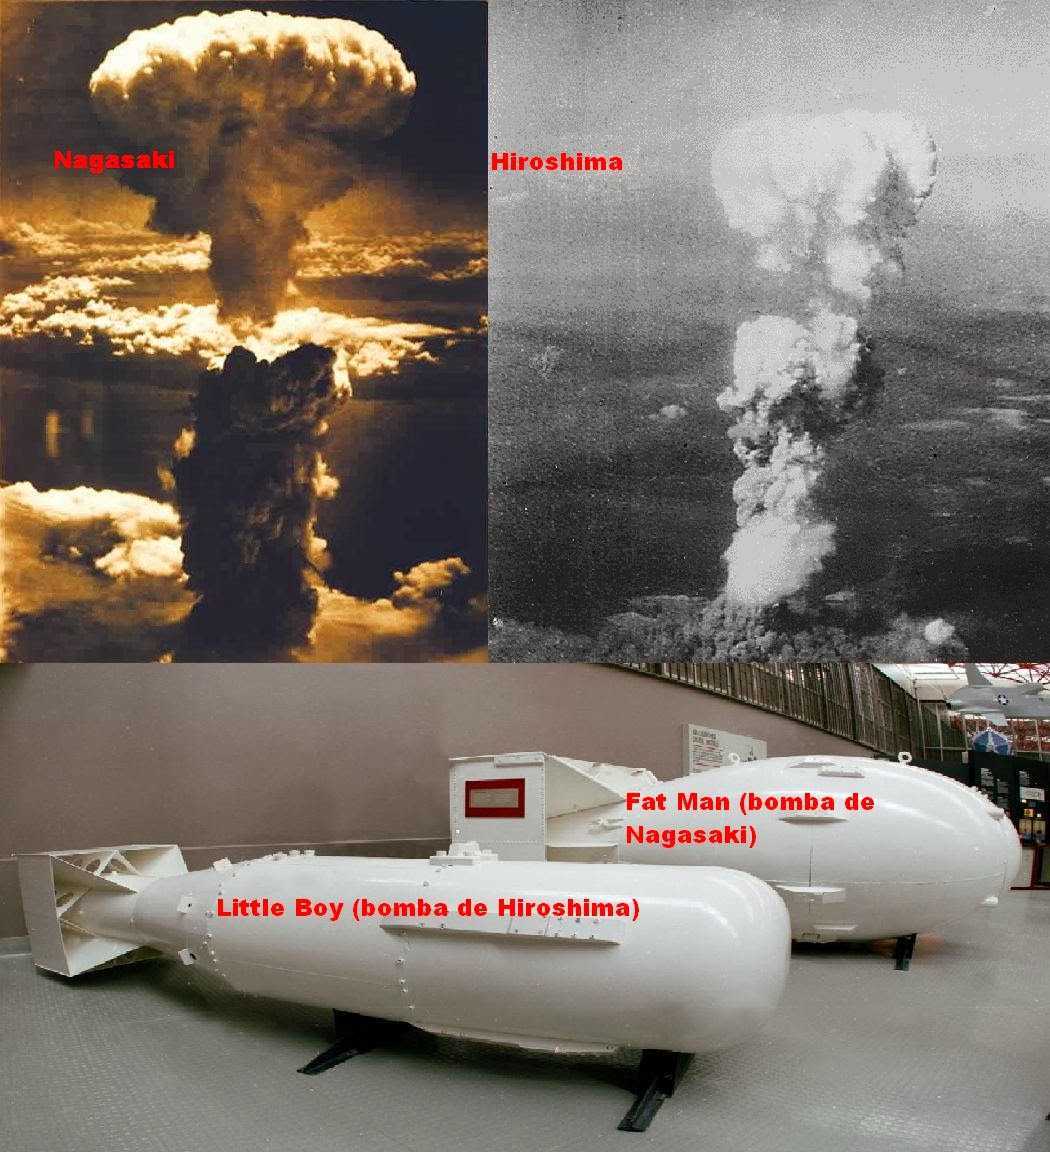 Почему скинули бомбу на нагасаки. Хиросима и Нагасаки атомная бомба. Нагасаки и Хиросима США атамнойьомба. Ядерное оружие США Хиросима Нагасаки. Япония 1945 Хиросима и Нагасаки.